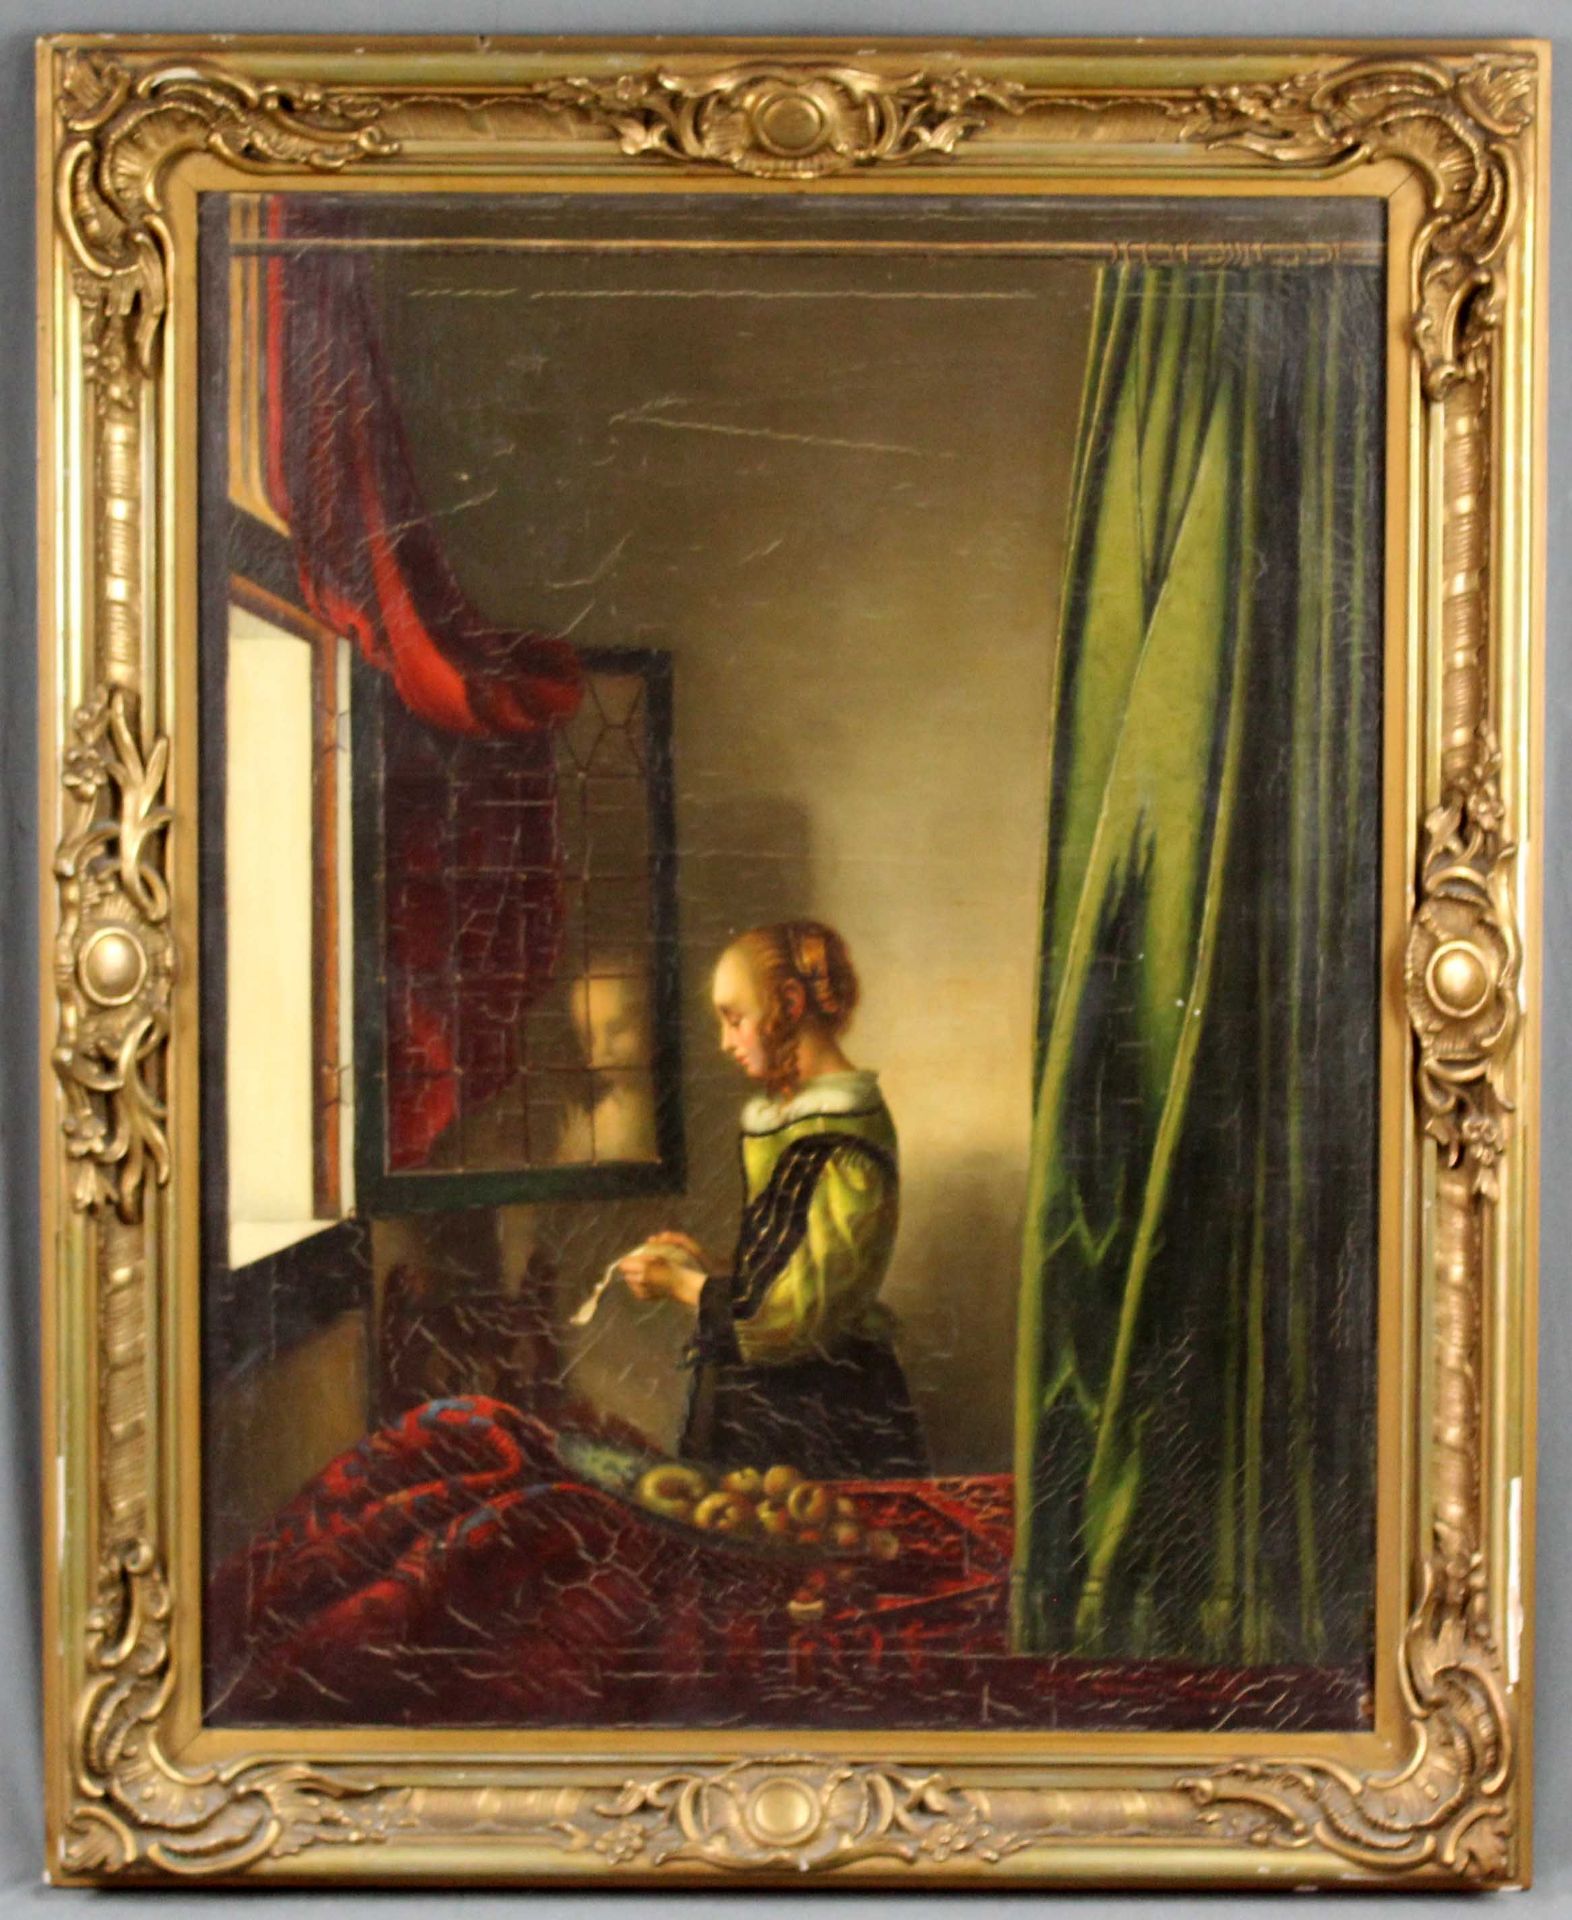 Nach Jan VERMEER VAN DELFT. "Brieflesendes Mädchen am offenen Fenster".83 cm x 64,5 cm. Gemälde. - Image 9 of 9